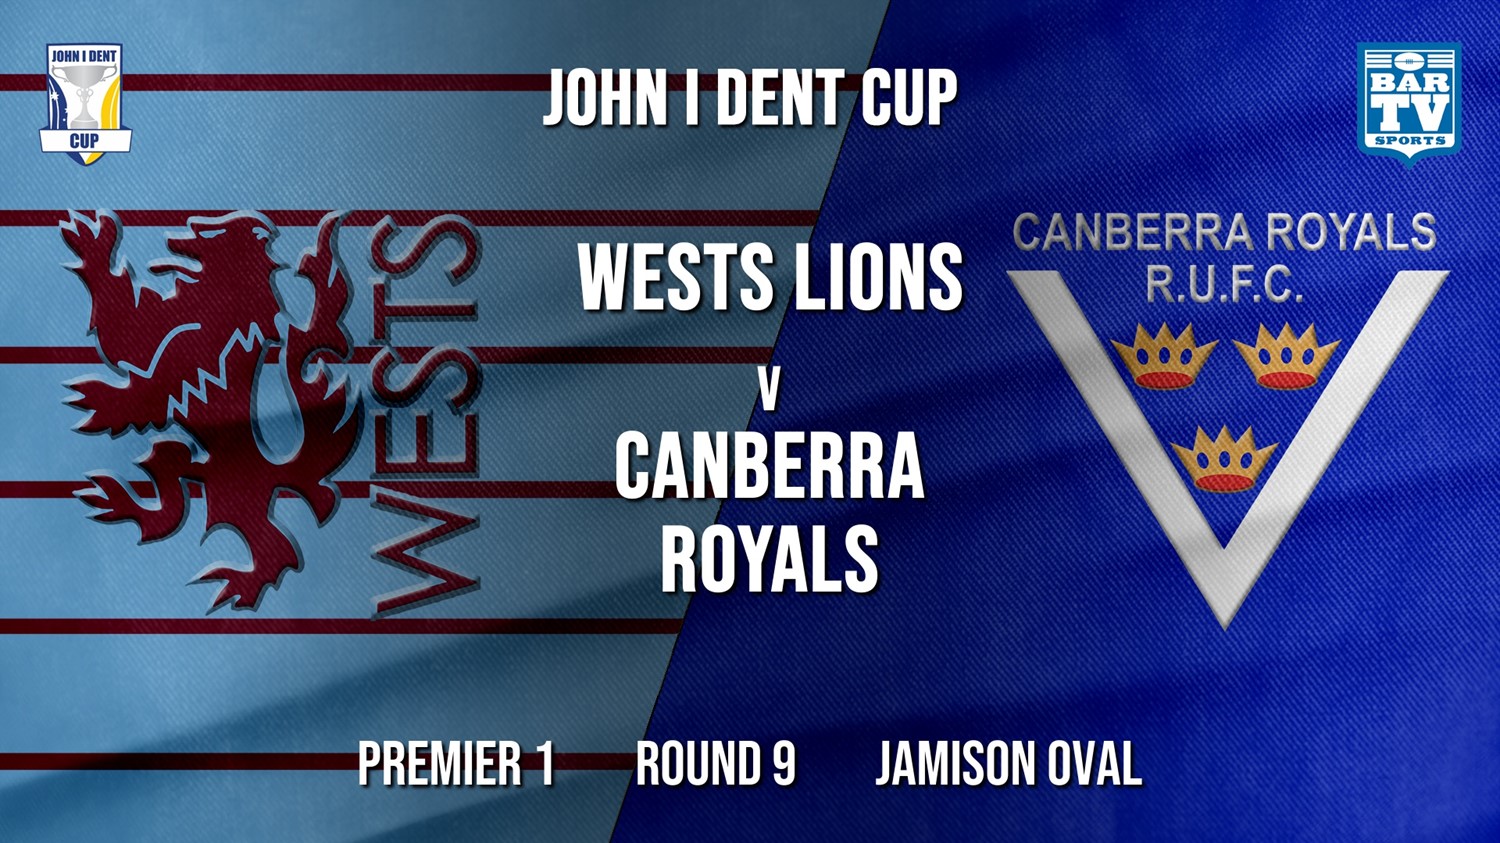 John I Dent Round 9 - Premier 1 - Wests Lions v Canberra Royals Minigame Slate Image